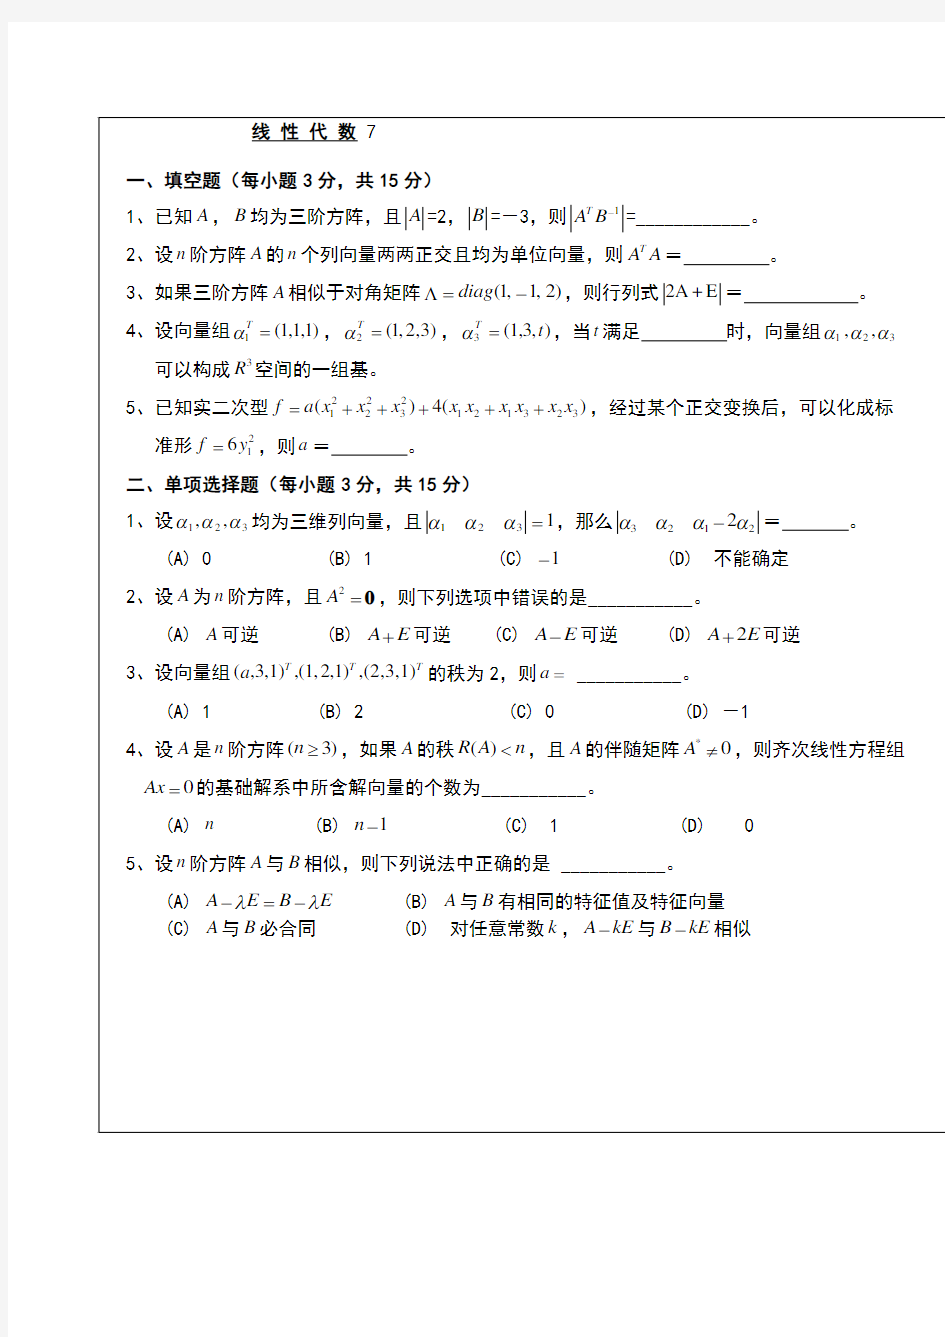 武汉理工大学whut线性代数考试试题及其参考答案